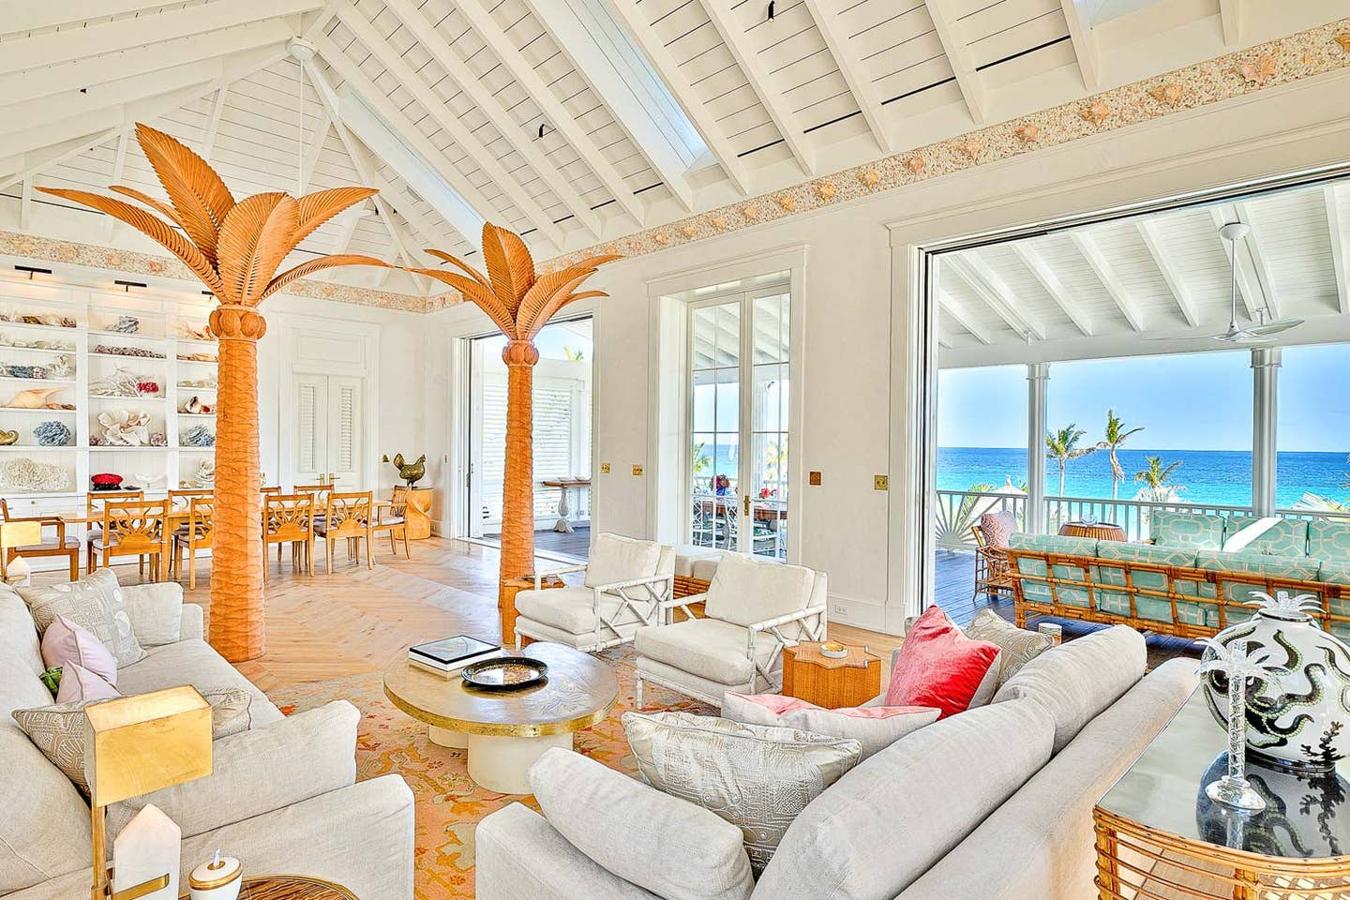 Decoración de vanguardia- La lujosa mansión de Kylie Jenner en Bahamas. Numerosas obras de arte decoran las paredes y contrastan con los techos abovedados y suelos de parquet.. Tampoco falta el mobiliario de todos los estilos compuesto por puiezas tanto de anticuarios como de firmas de diseñadores de renombre.